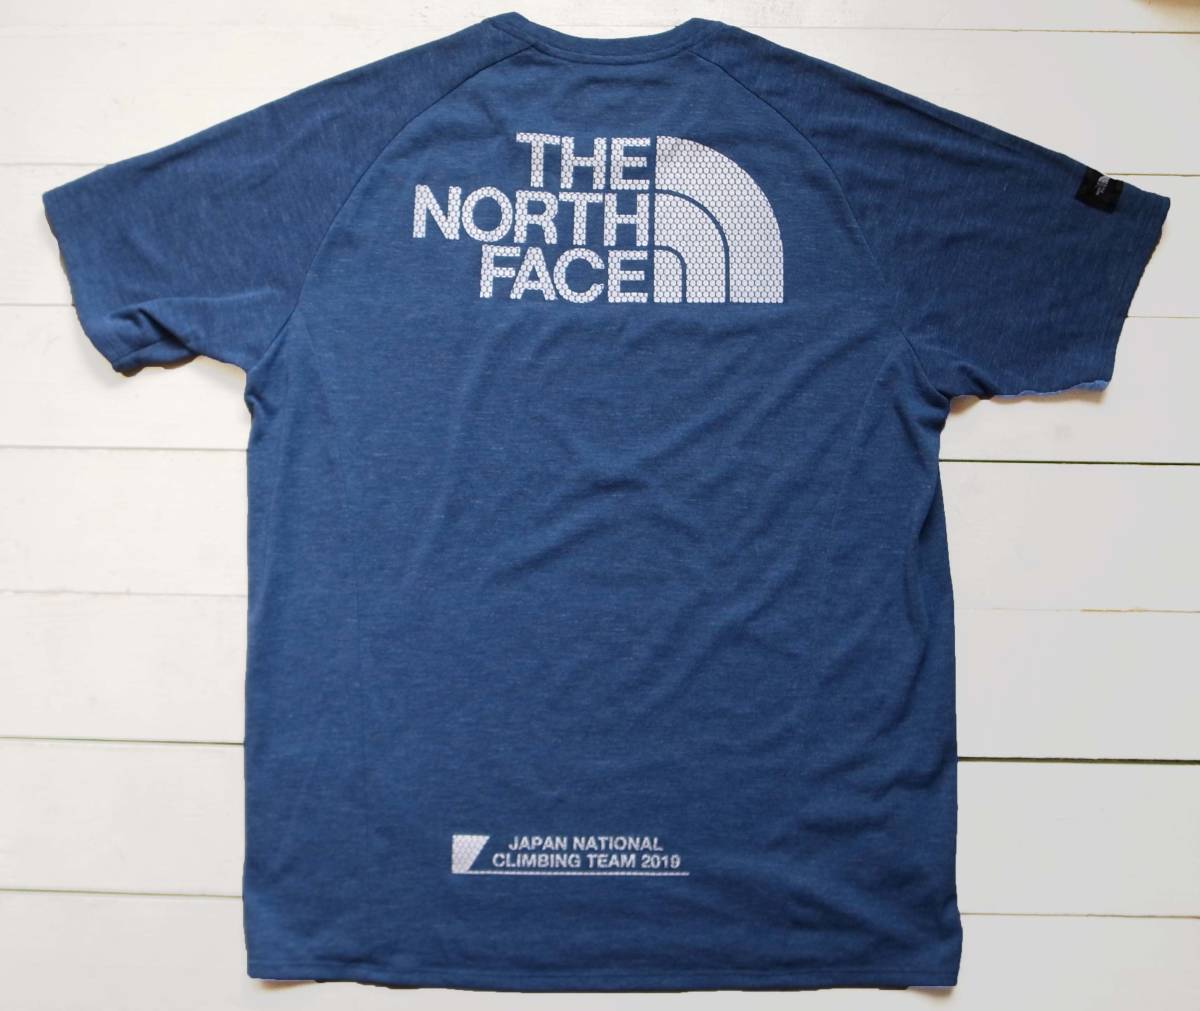 THE NORTH FACE ノースフェイス JNCT Supporter's Tee クライミングTシャツ L 2019 八王子ワールドチャンピオンシップ 日本代表 NT11981J